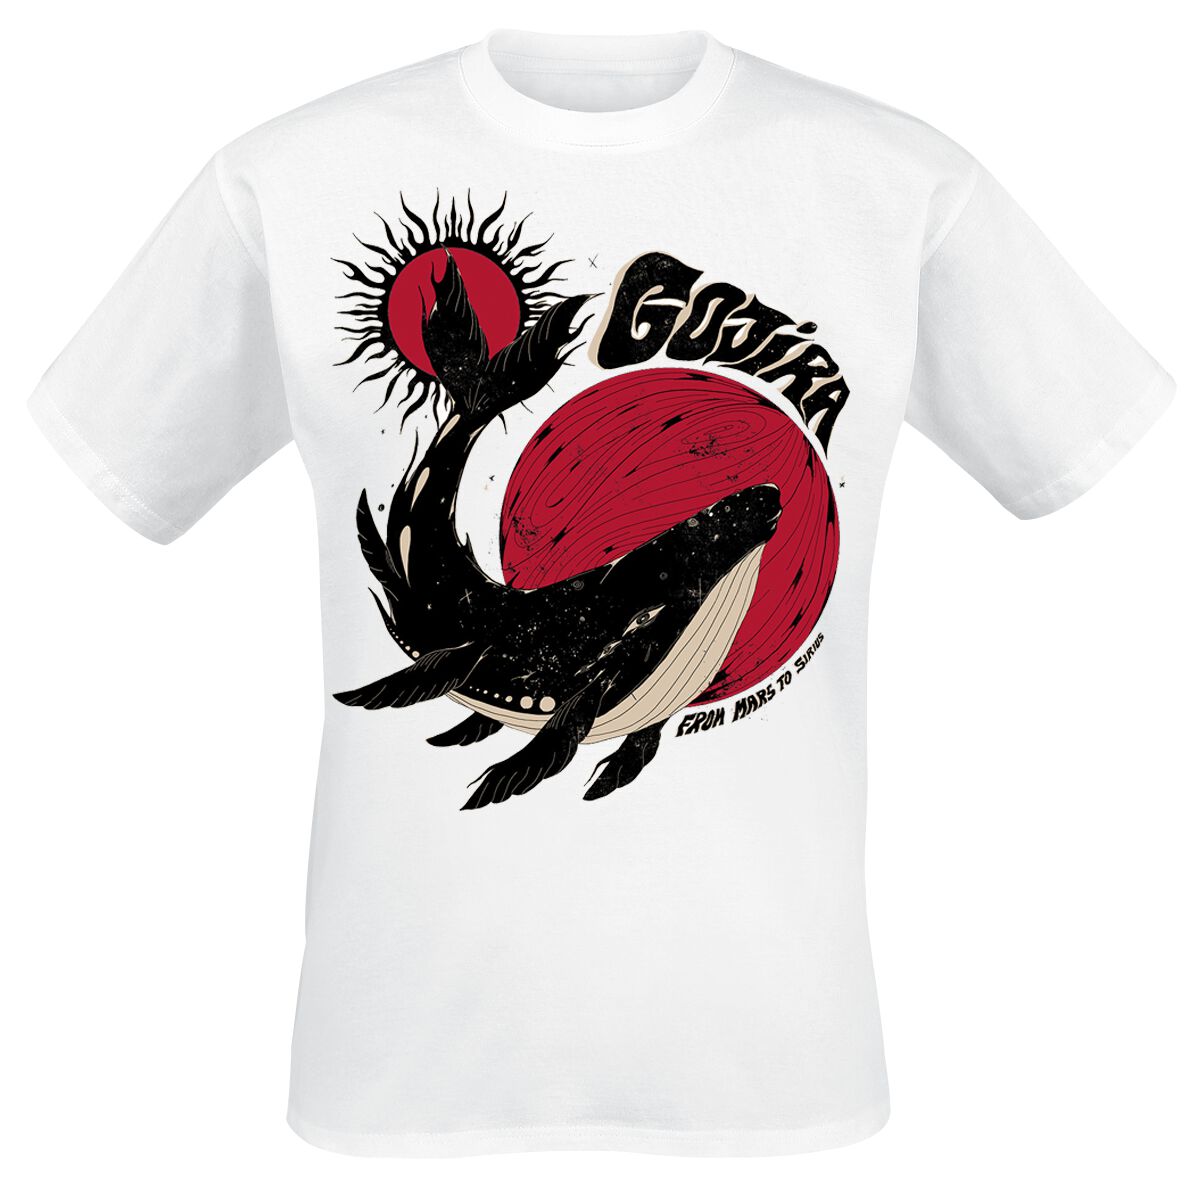 Gojira T-Shirt - Whale Sun Moon - M bis XXL - für Männer - Größe M - weiß  - Lizenziertes Merchandise!